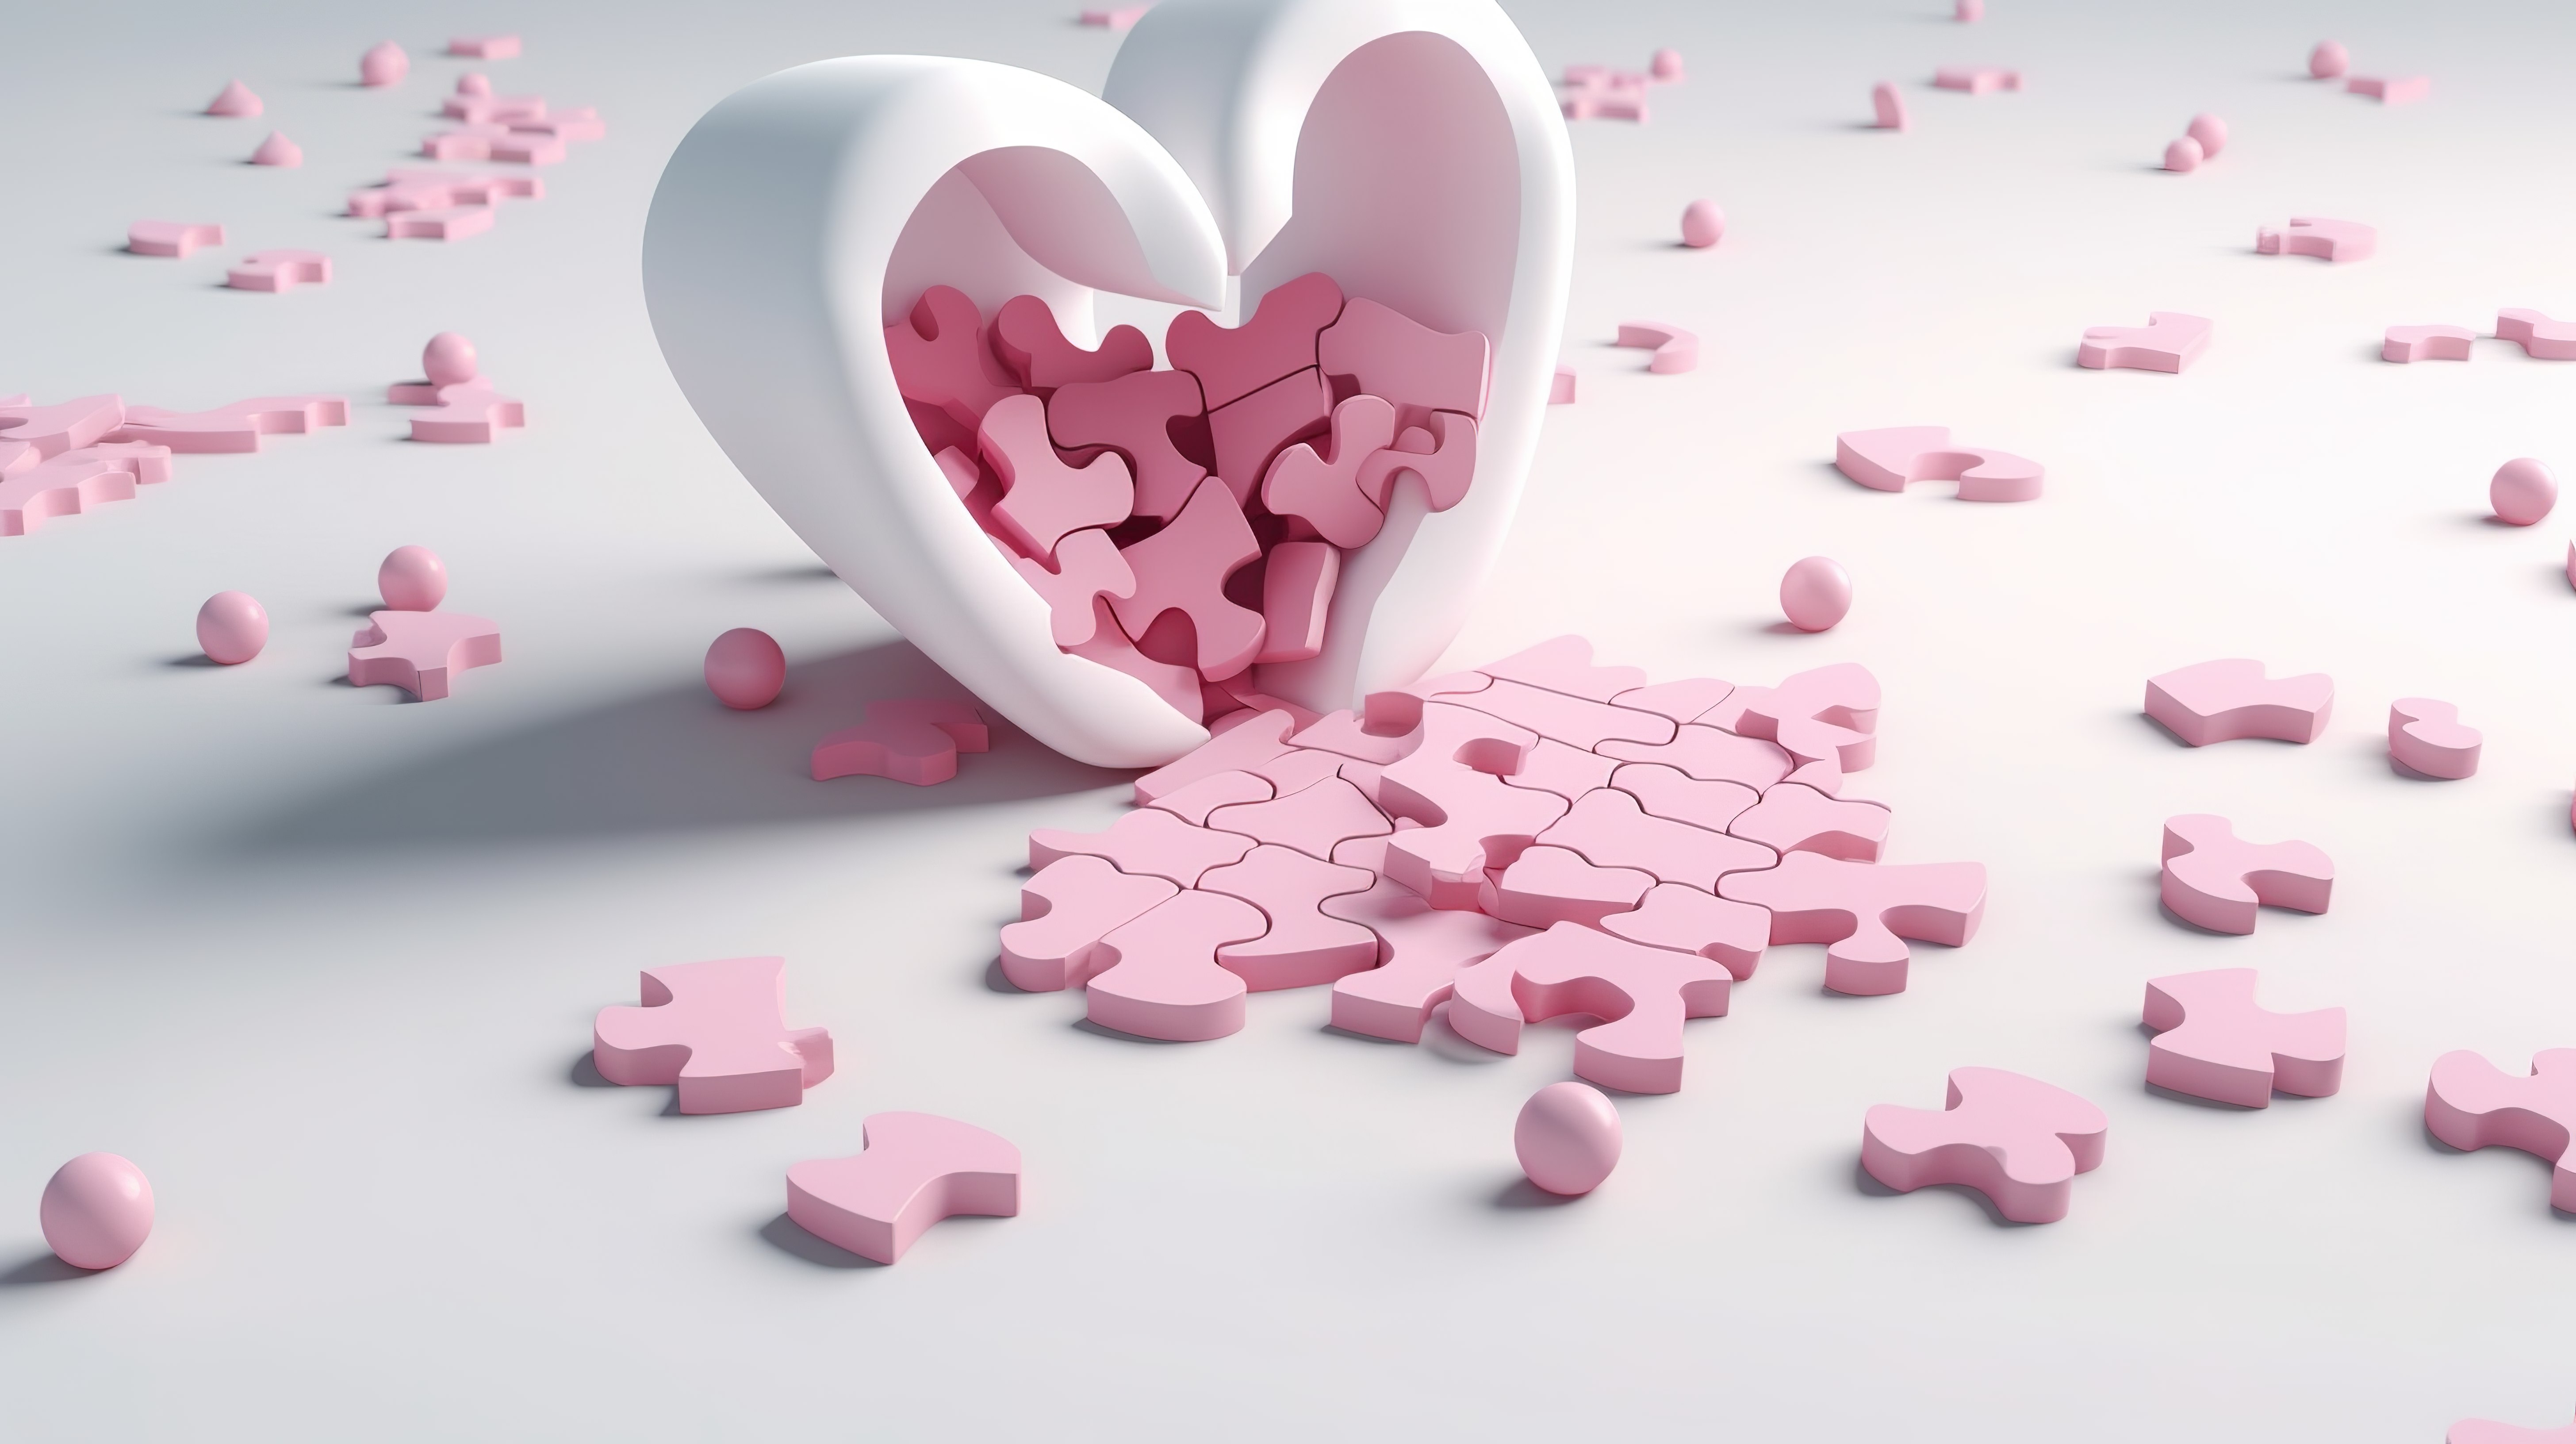 现实设计的心形拼图和白色背景上的粉红色药丸是 3D 渲染中的治疗概念图片